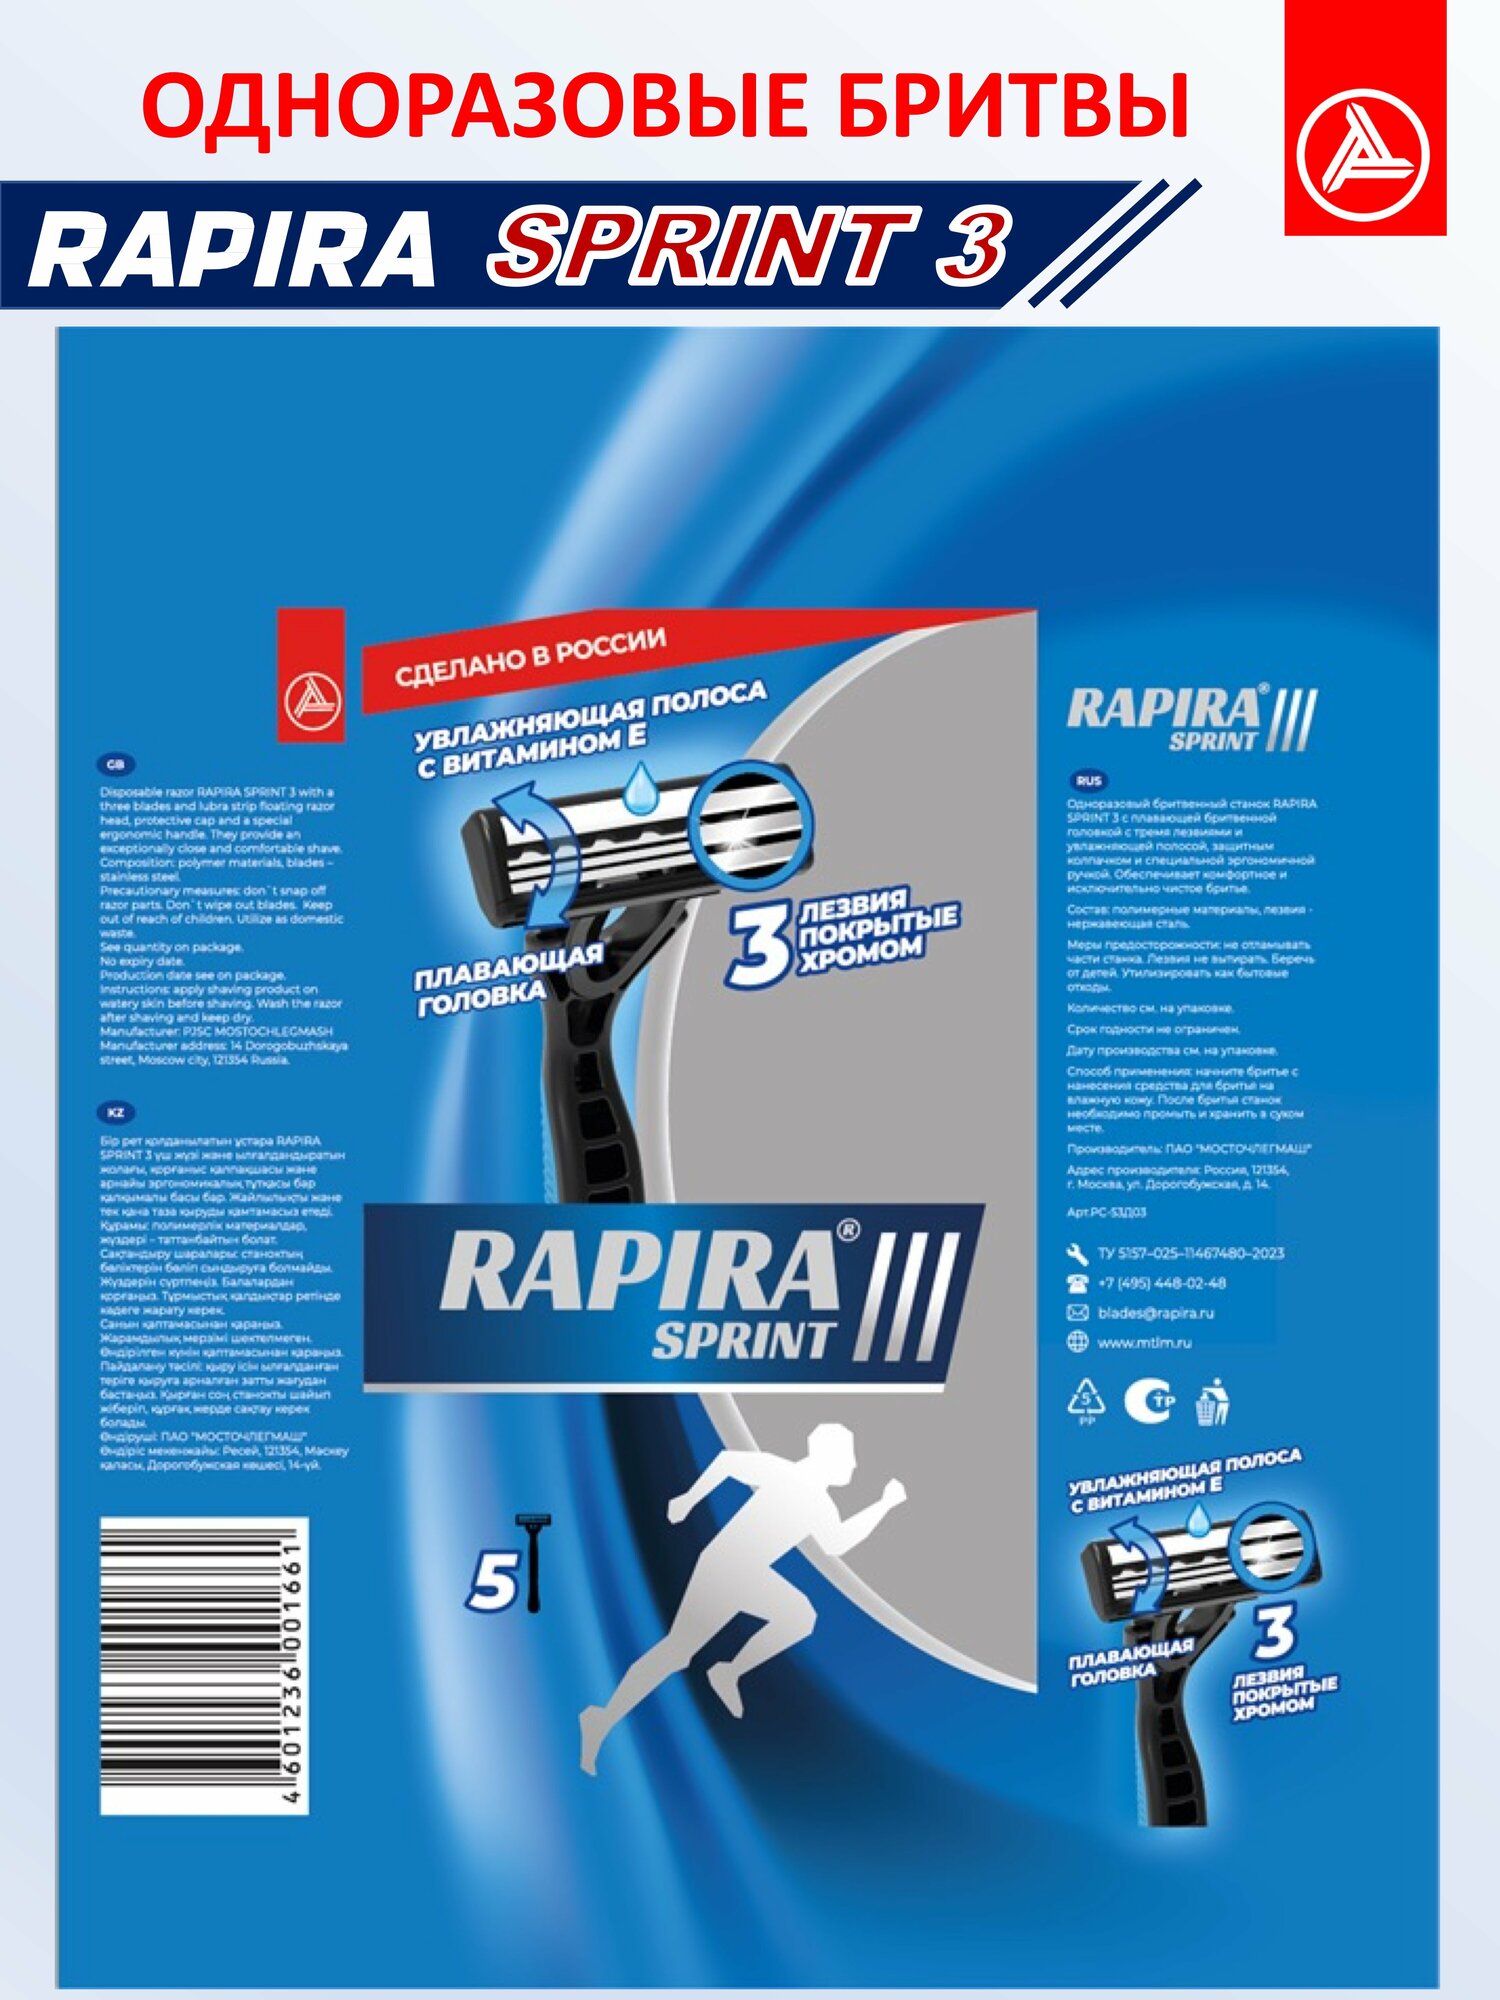 Одноразовый бритвенный станок Rapira Sprint III